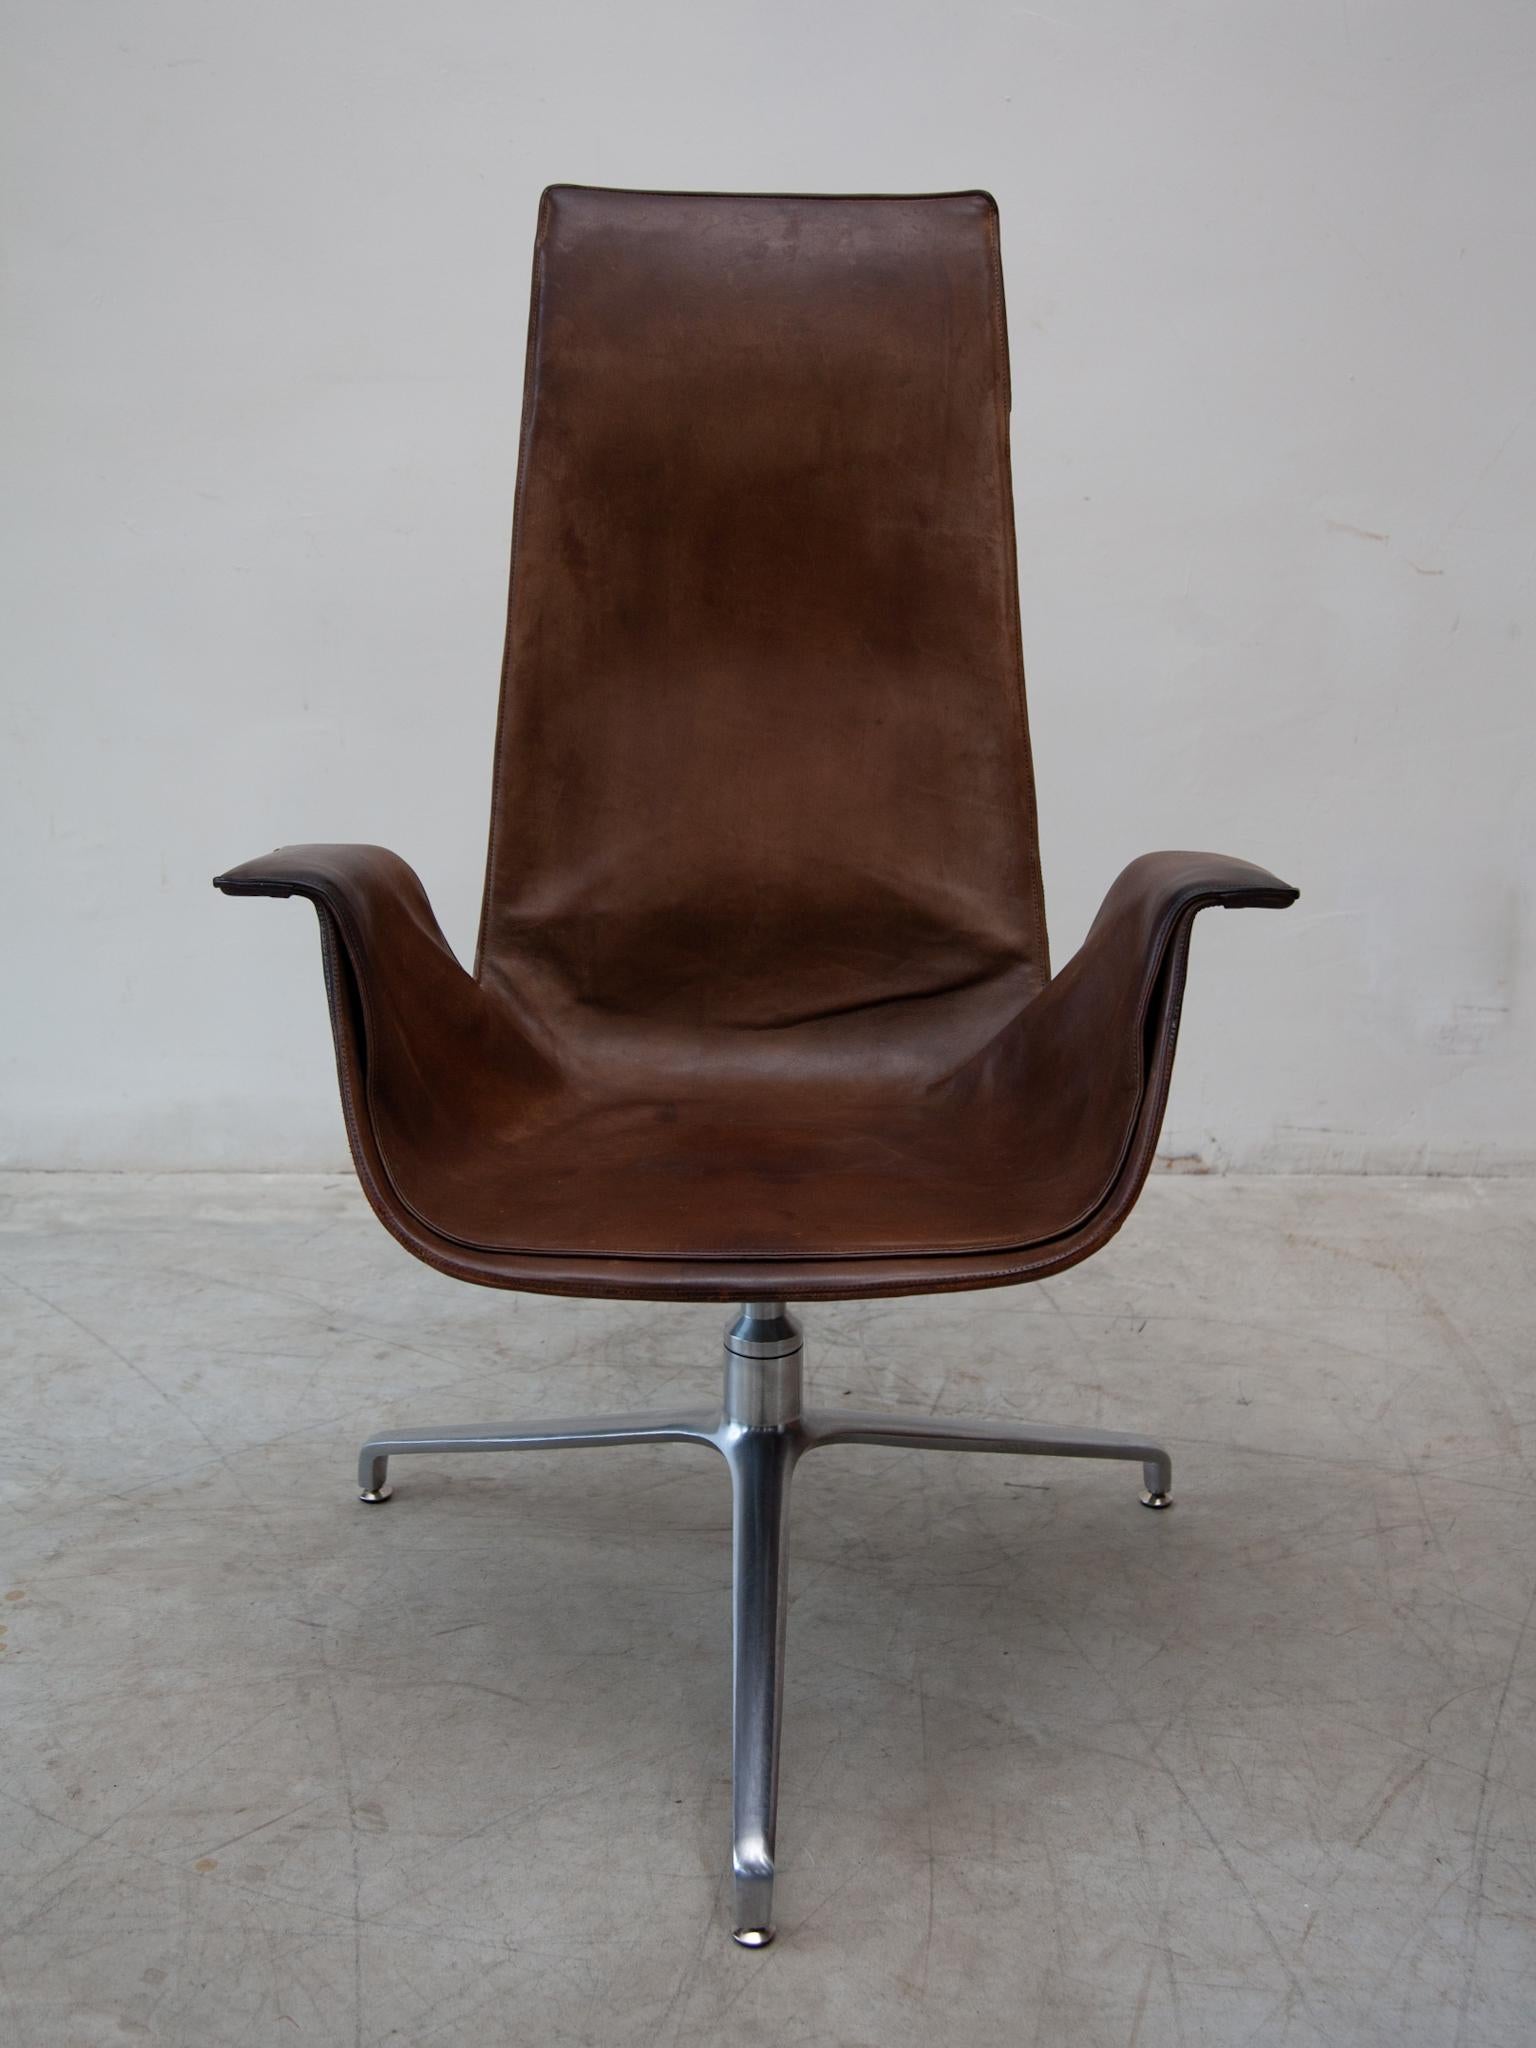 Sculpture intemporelle de la modernité, en cuir brun chocolat, la belle chaise de salon FK 6725 conçue en 1964, le modèle a reçu un prix fédéral de la bonne forme. En tant que chaise longue de réunion, conçue par Preben Fabricius et Jörgen Kastholm,